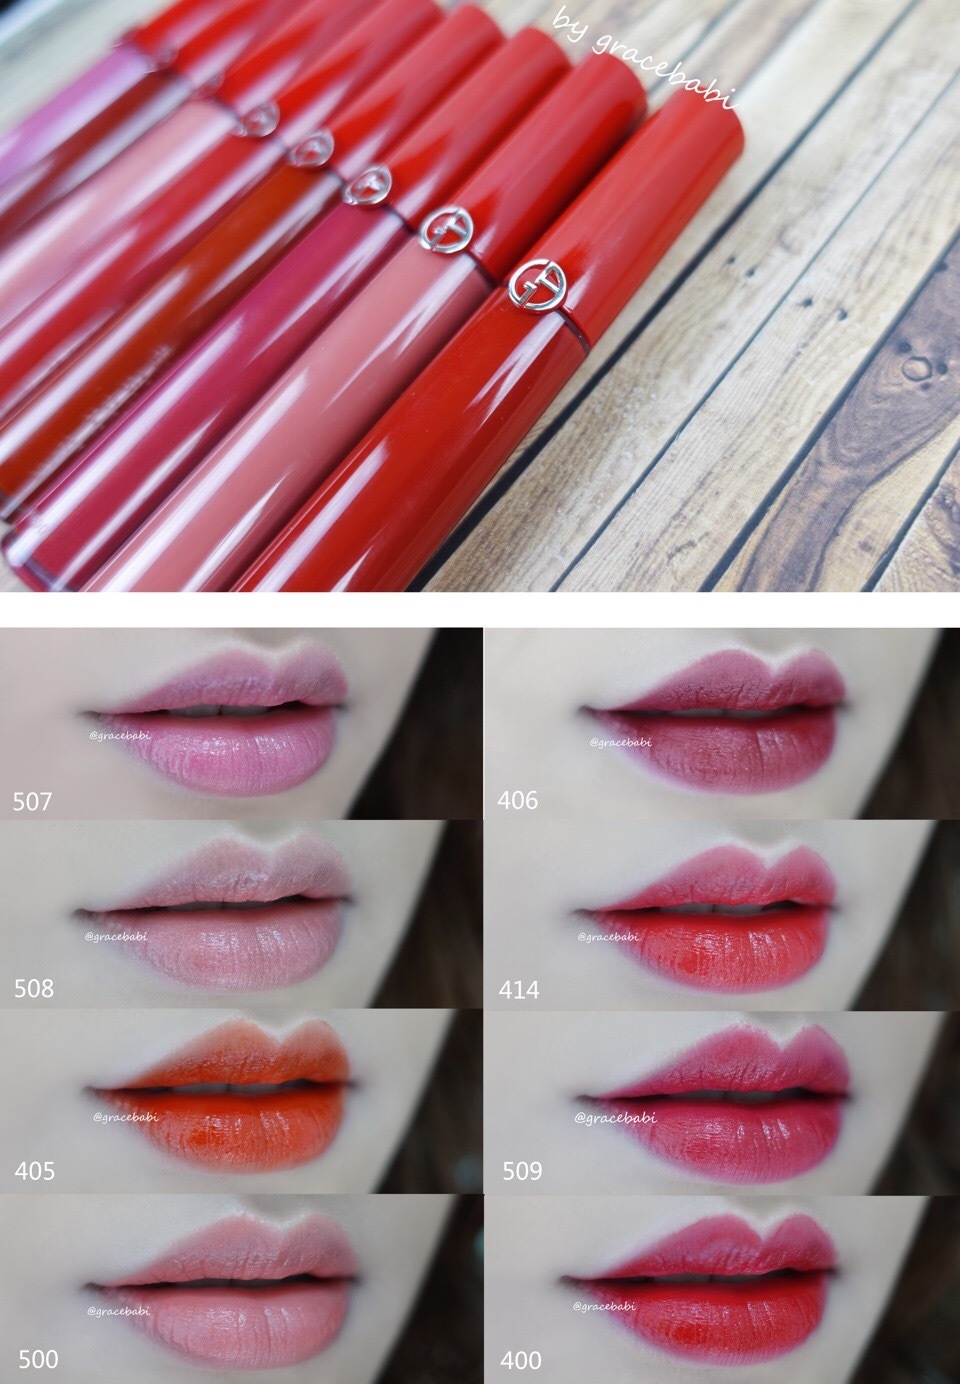 阿玛尼红管唇釉507、406、508、414、405、509、500、400试色